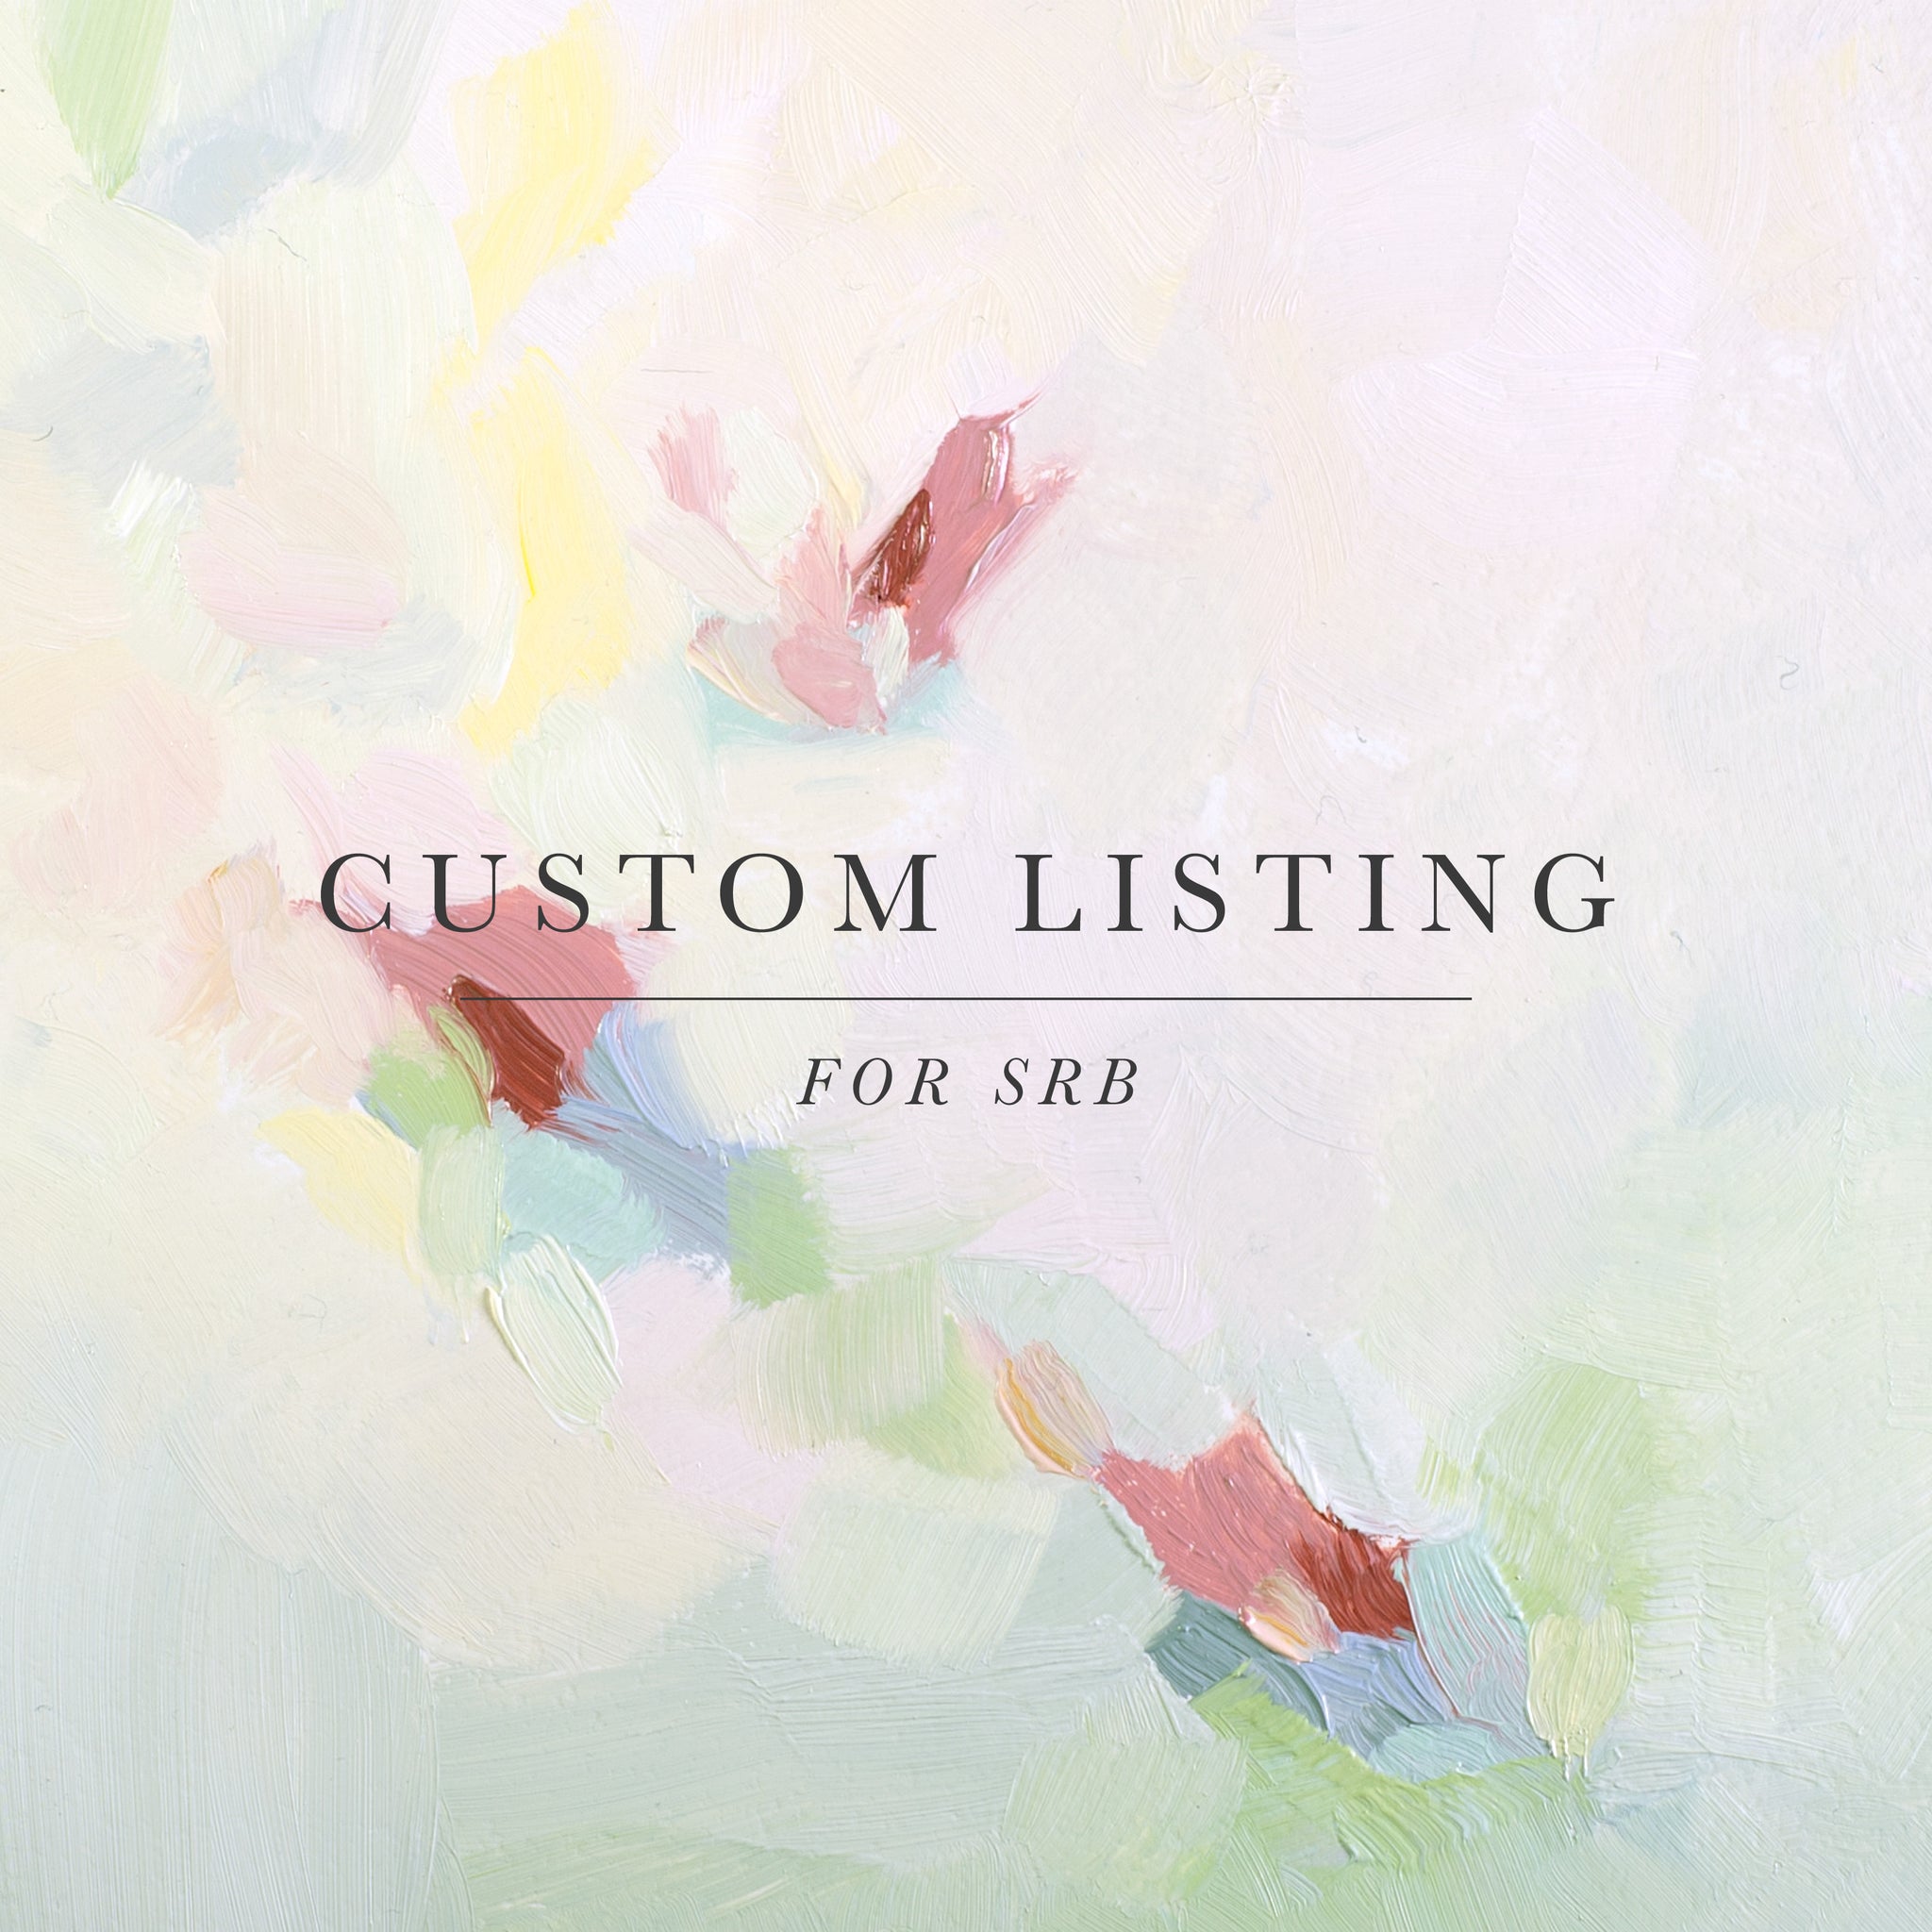 Custom Listing for SRB